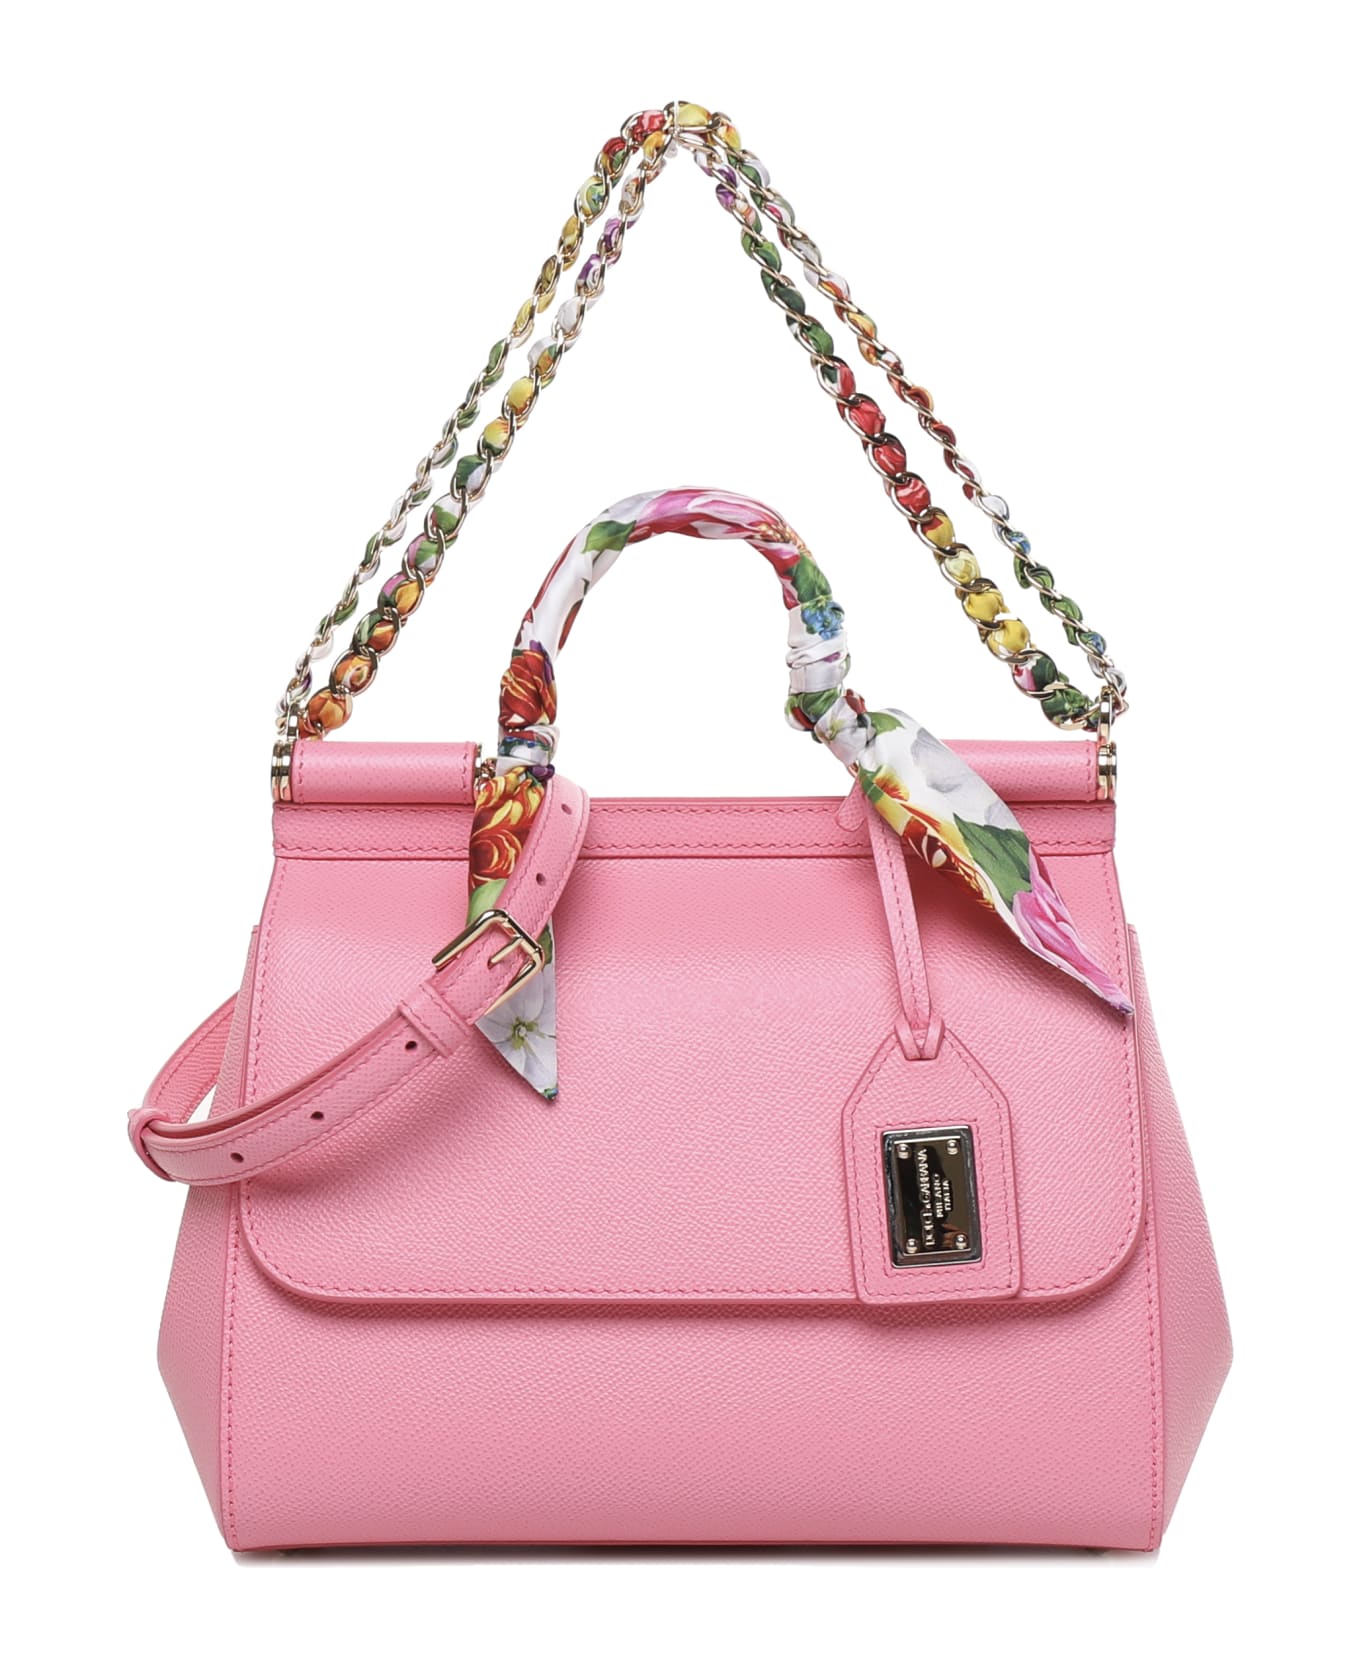 Dolce & Gabbana Sicily Bag In Calfskin - Rosa